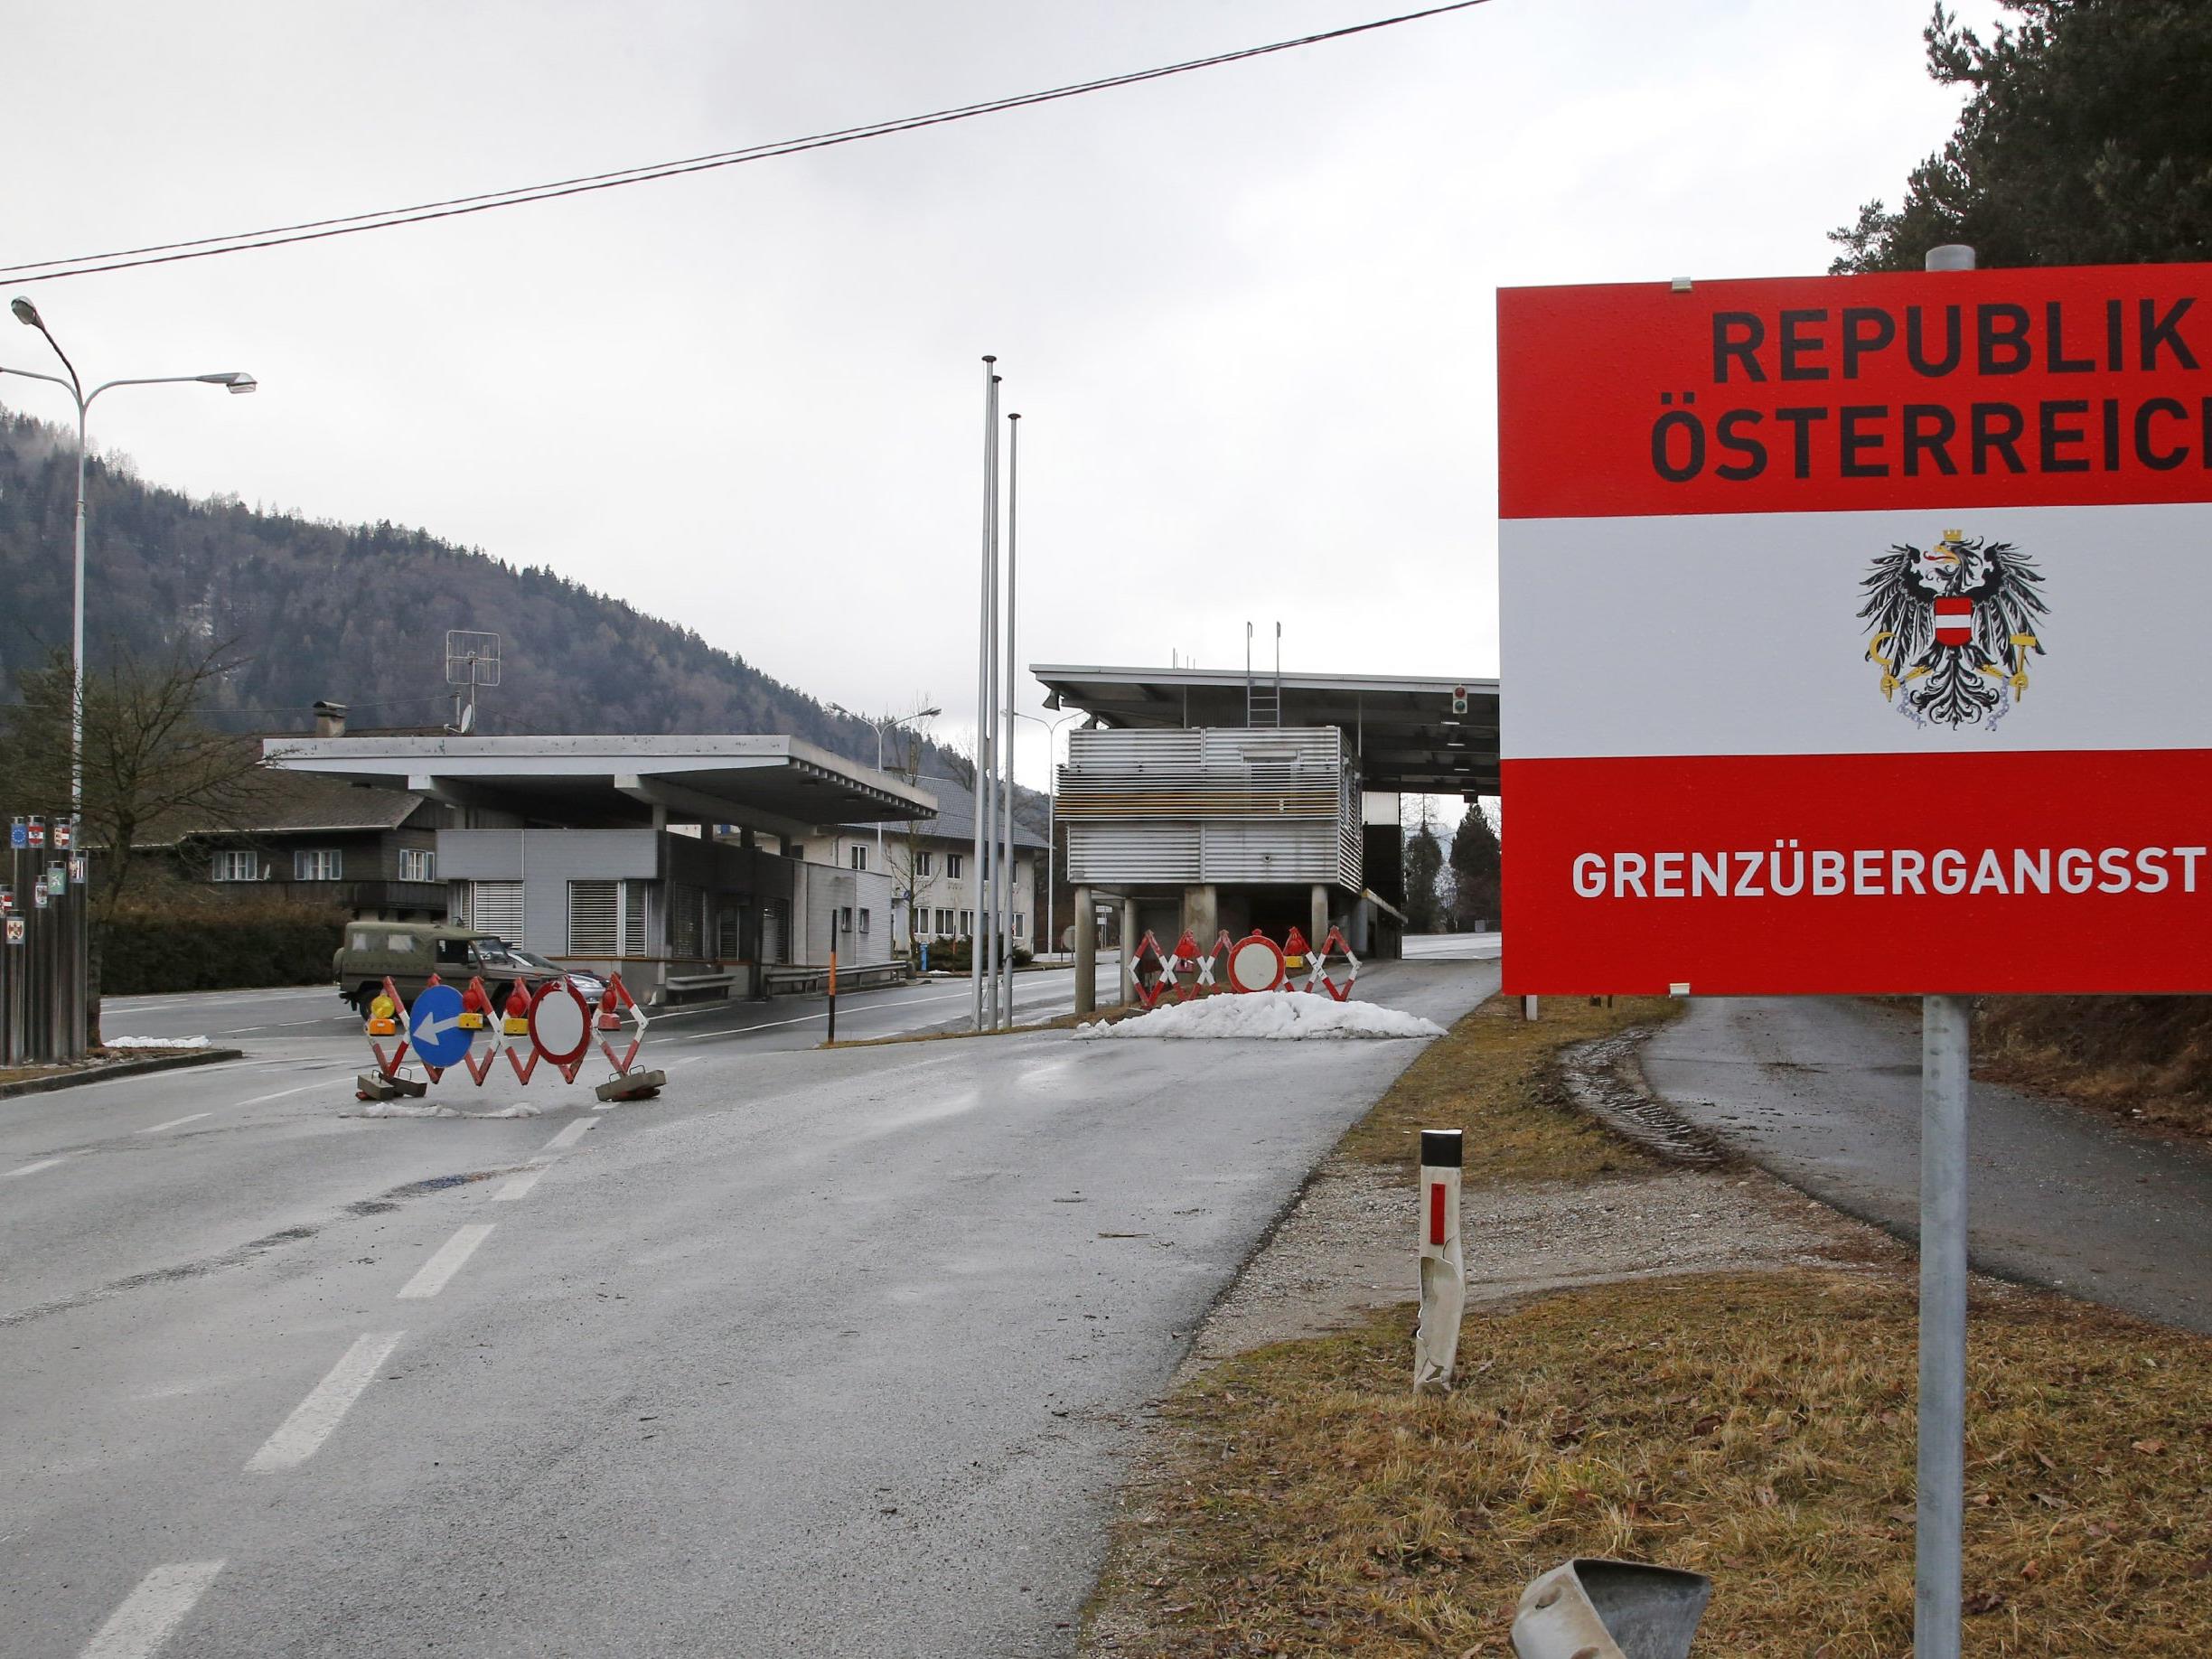 Wäre die rigorose Abschiebung, wie es die Schweiz plant, in Österreich denkbar?